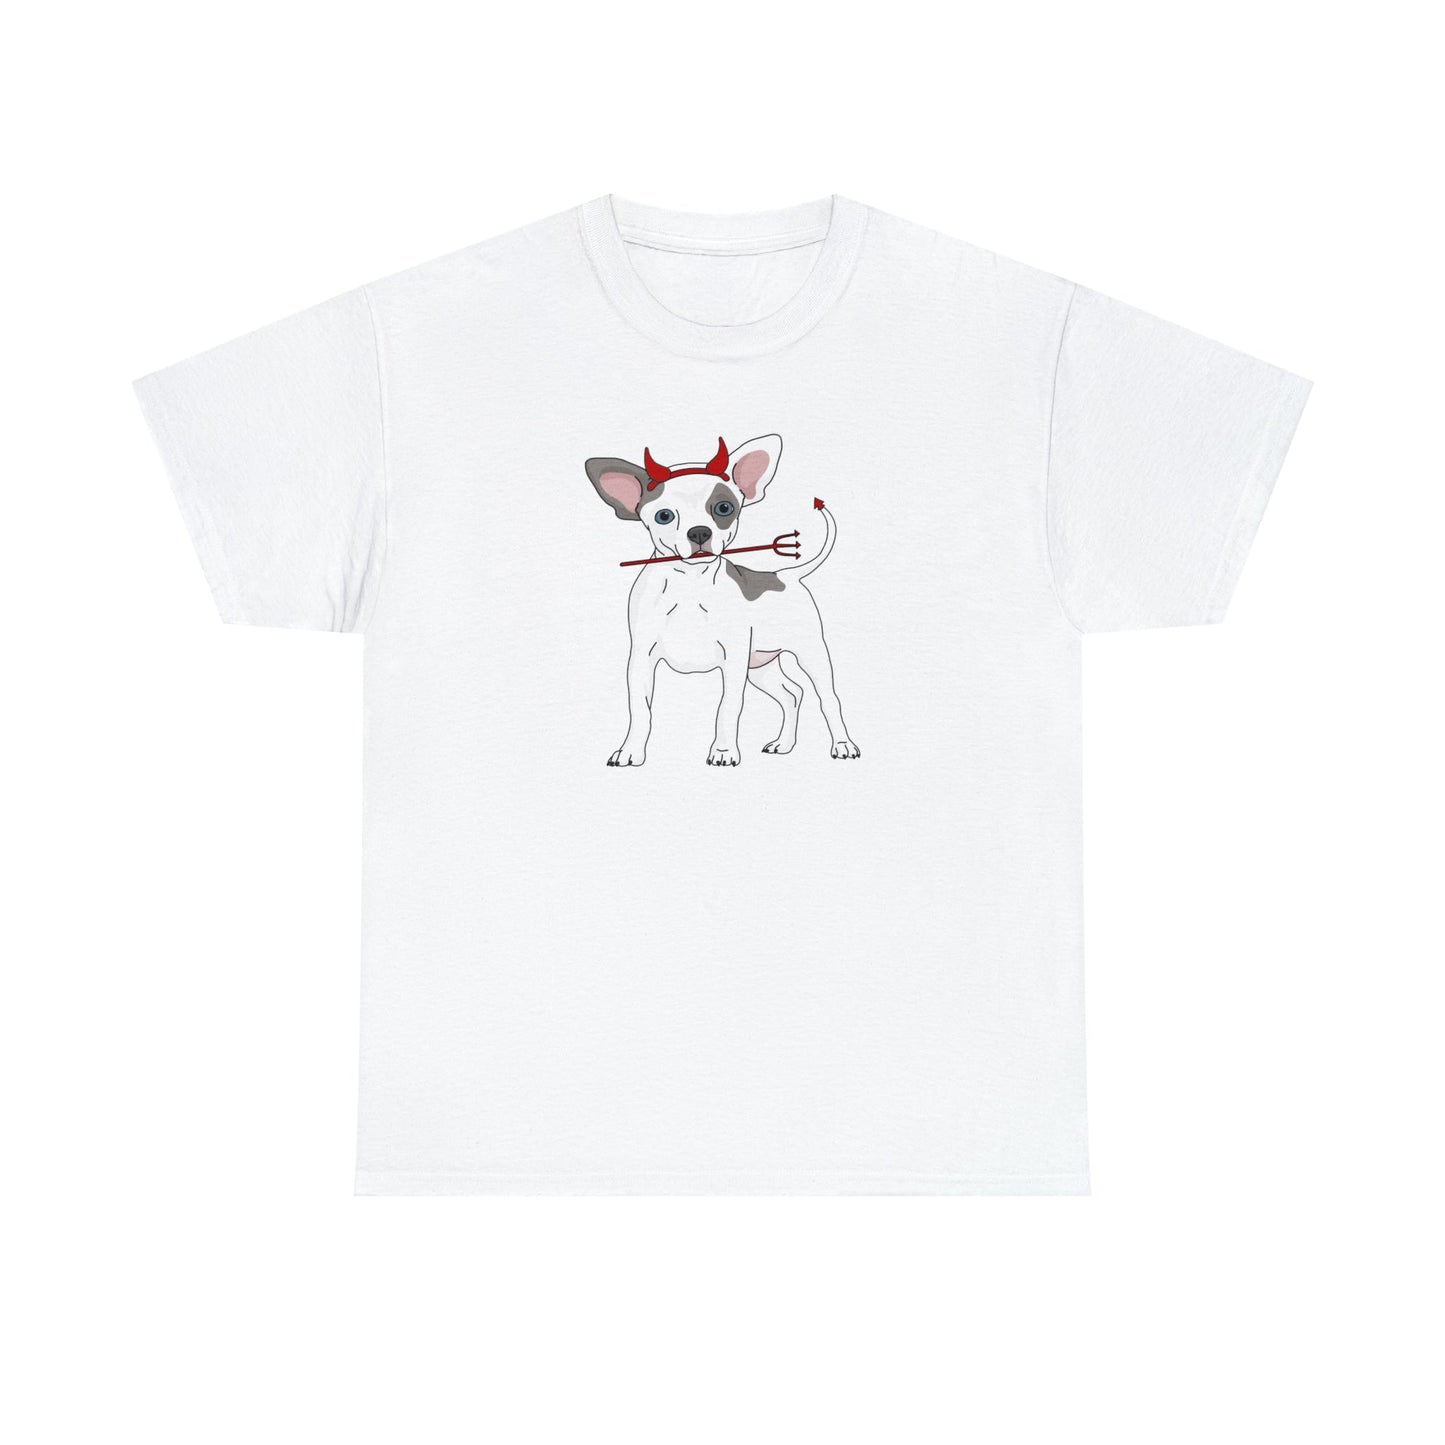 Devil Puppy | T-shirt - Detezi Designs-30490340581960744749